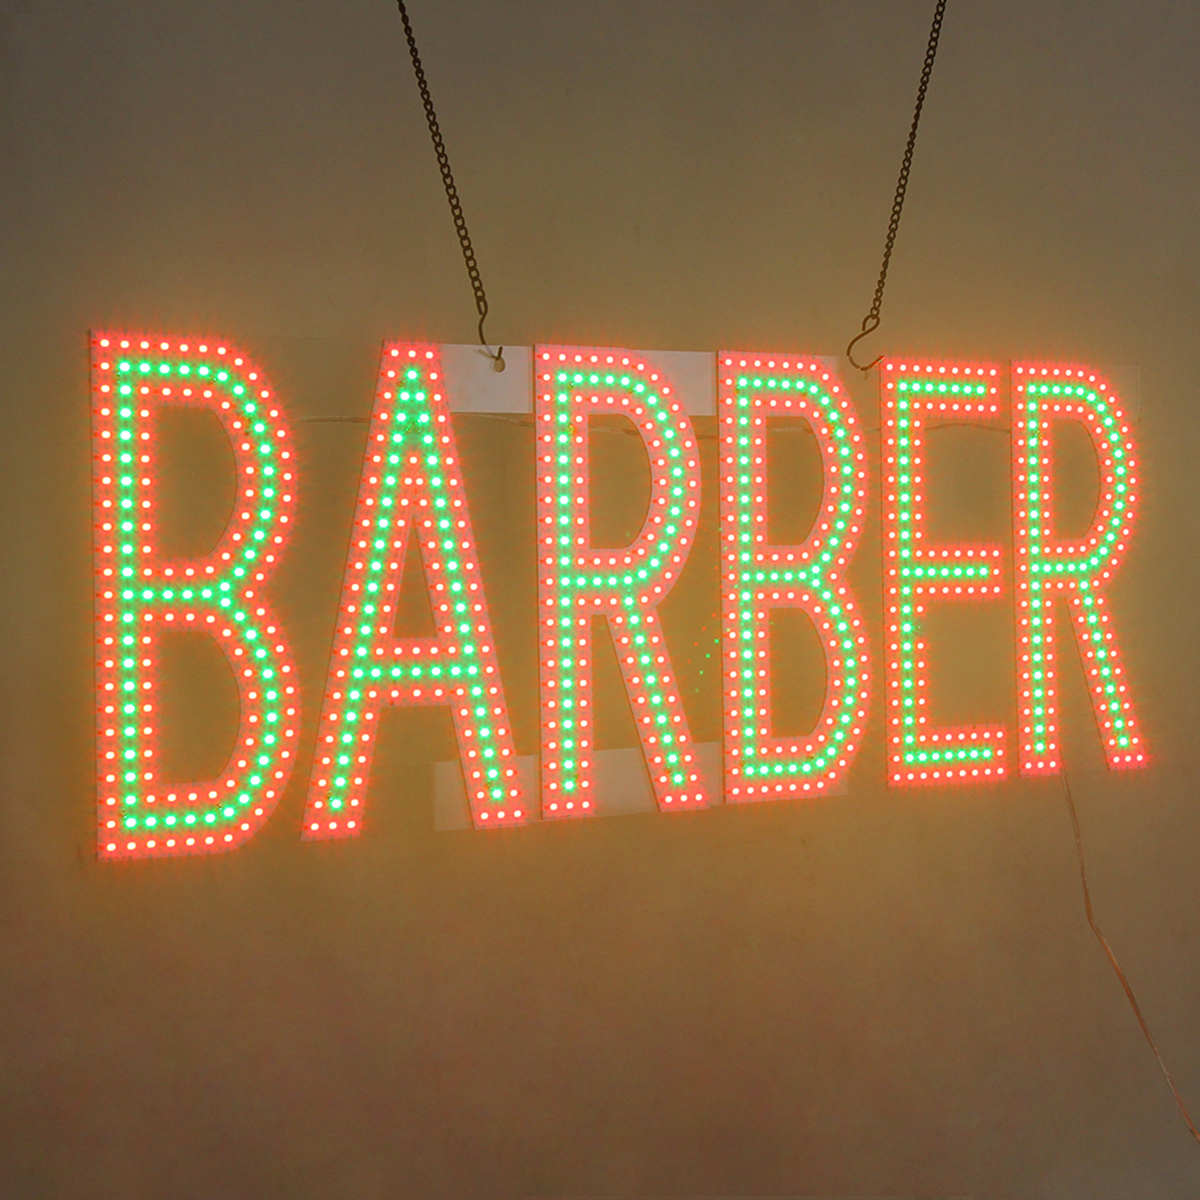 barber led sign